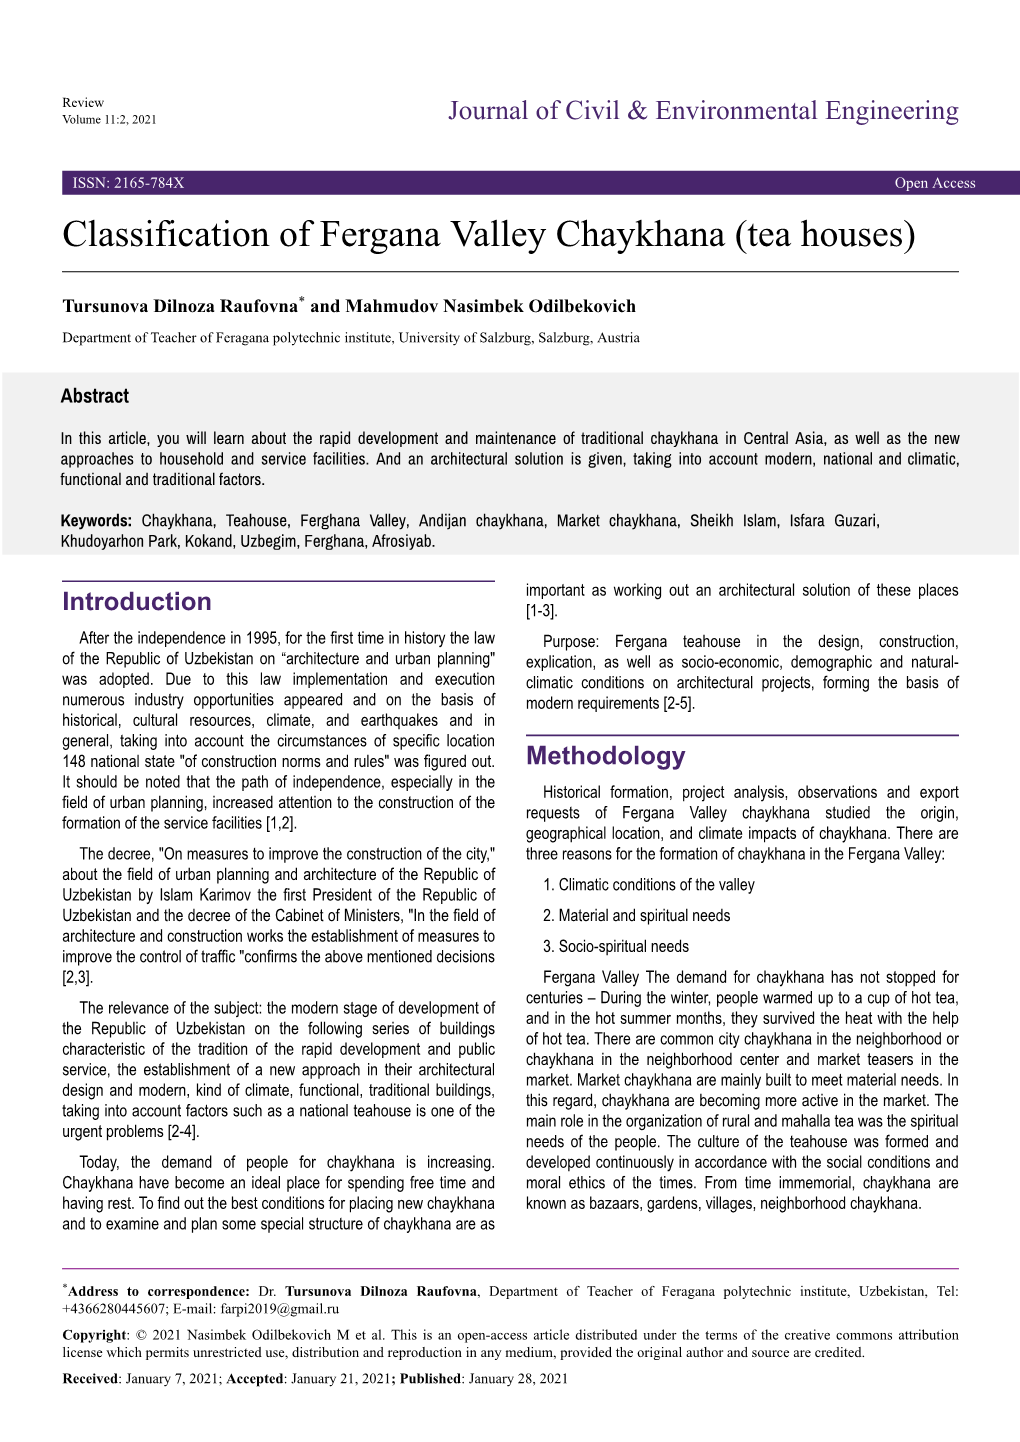 Classification of Fergana Valley Chaykhana (Tea Houses)